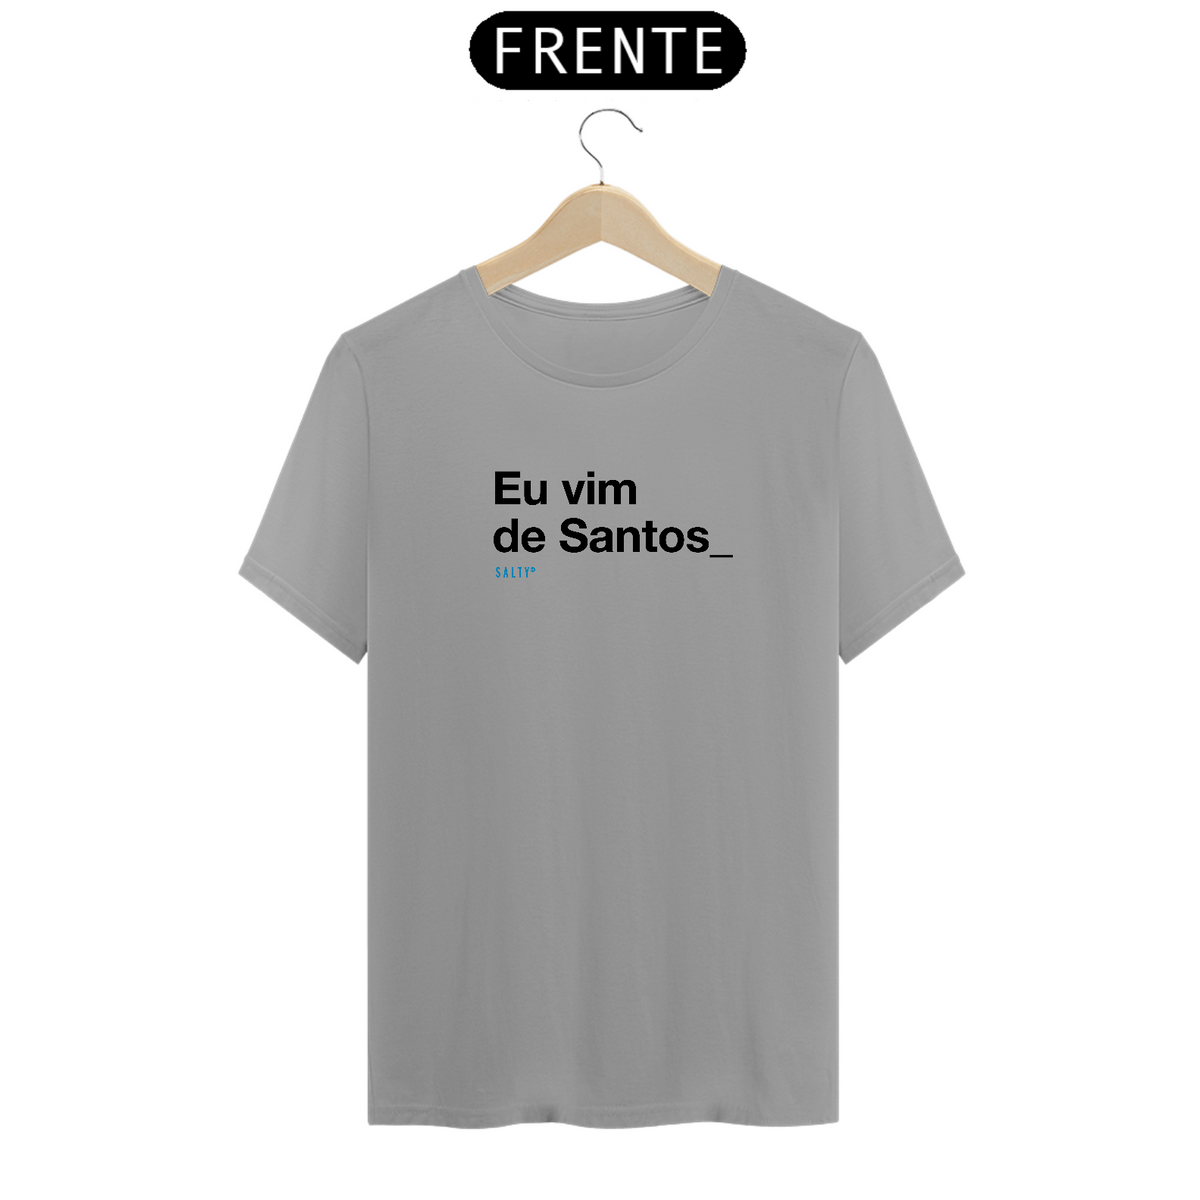 Nome do produto: T-Shirt Eu vim de Santos